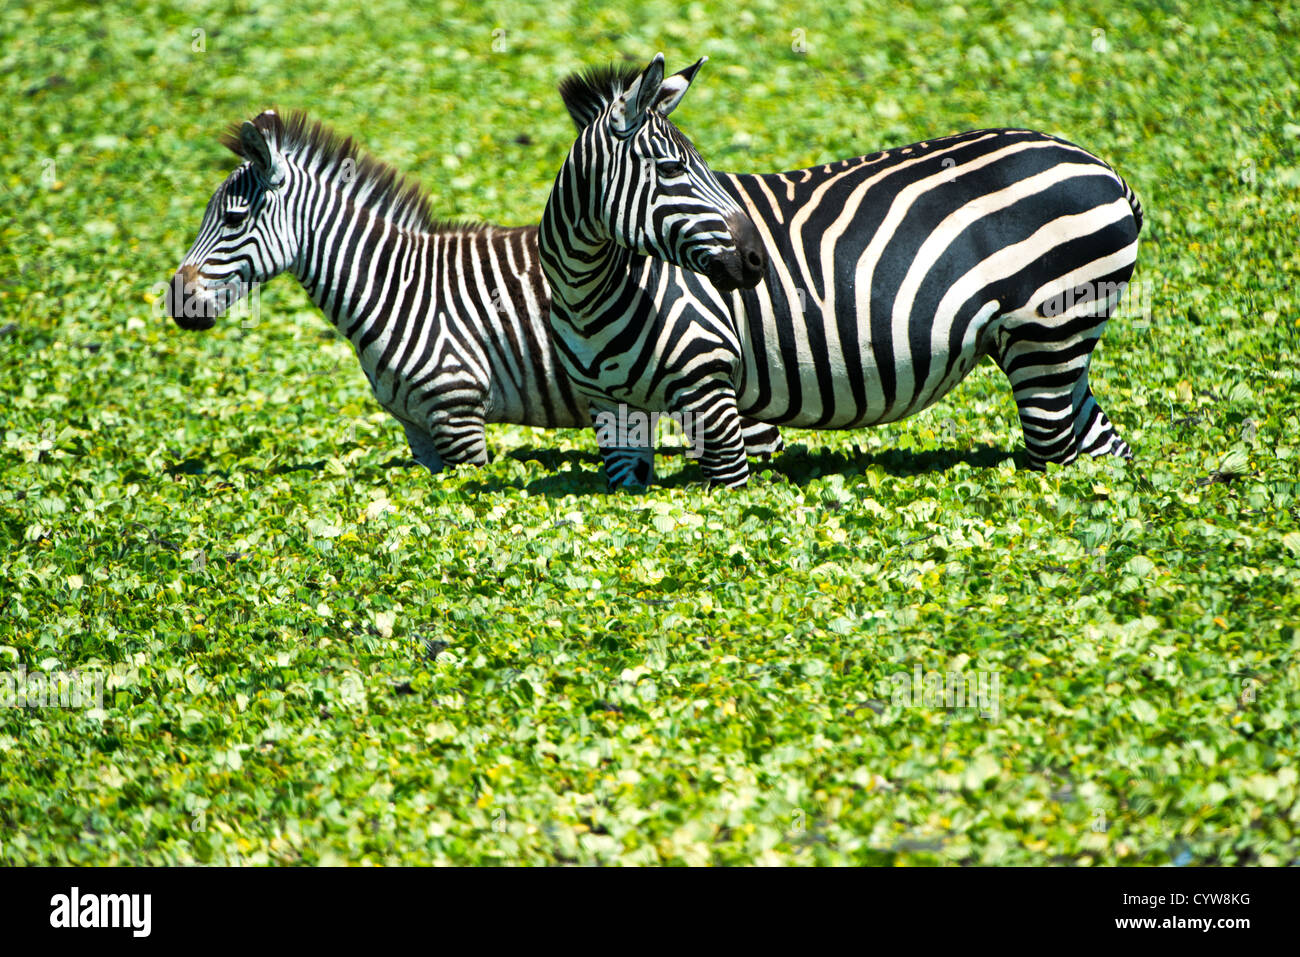 Der Tarangire National Park, Tansania - ein paar Zebras in den flachen Gewässern von einem kleinen Reed stand-bedeckten See in der Tarangire National Park im Norden von Tansania, nicht weit von den Ngorongoro Krater und die Serengeti. Stockfoto